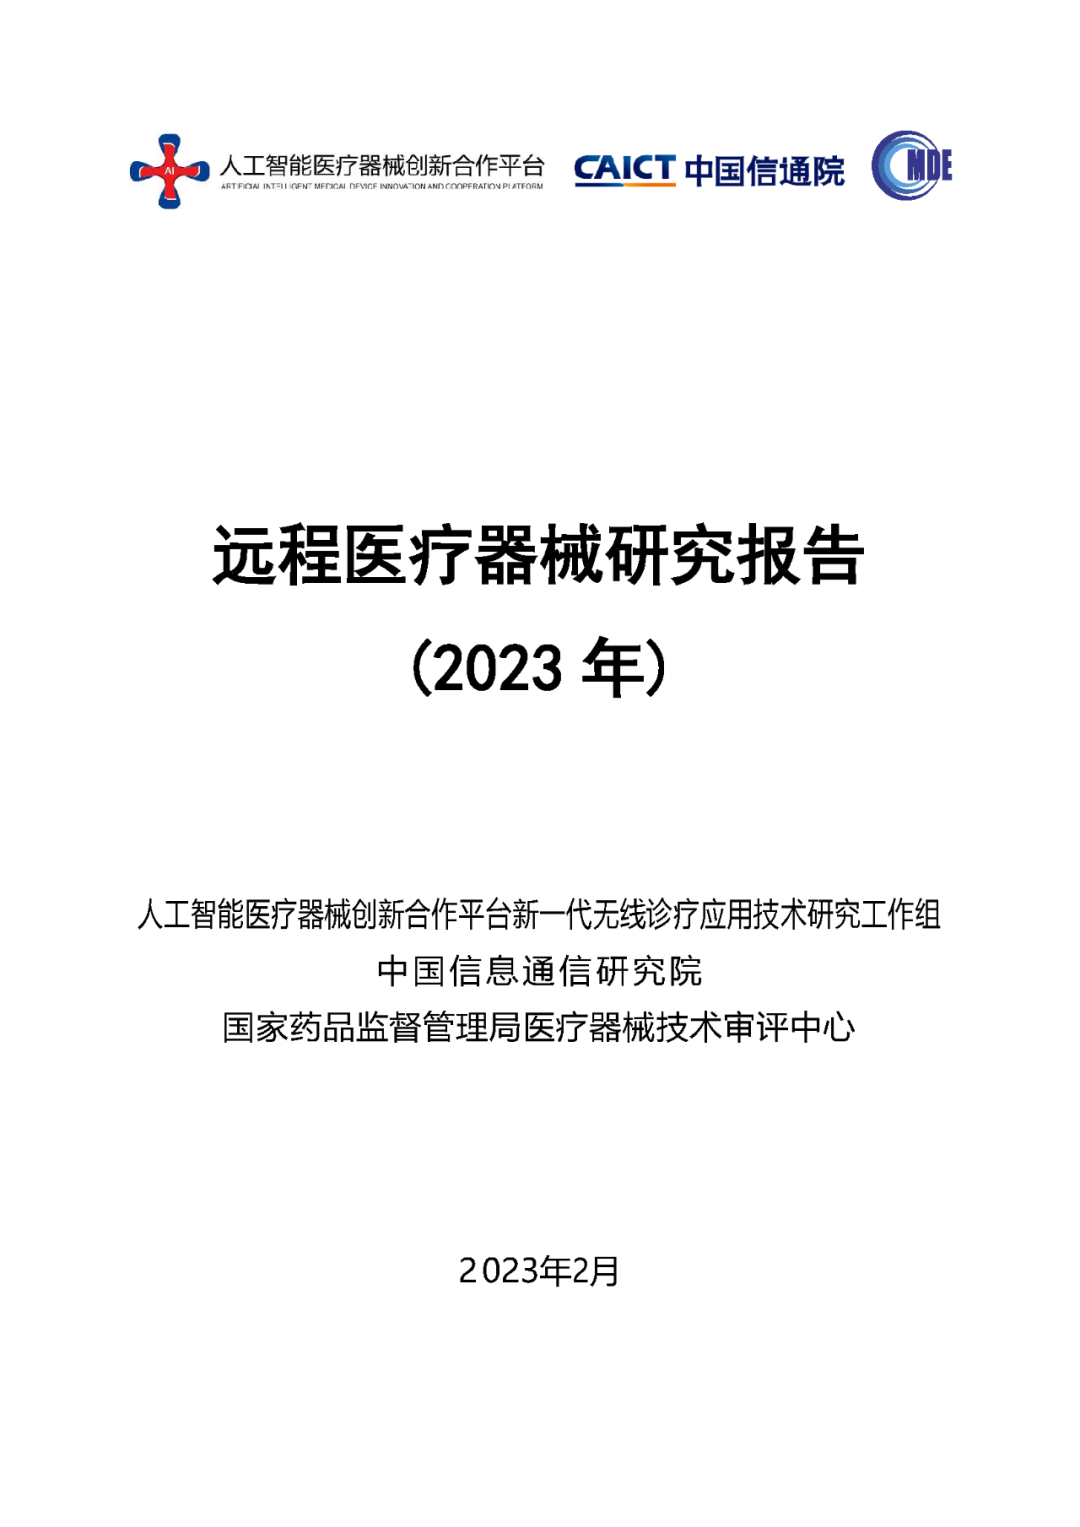 《远程医疗器械研究报告（2023年）》发布